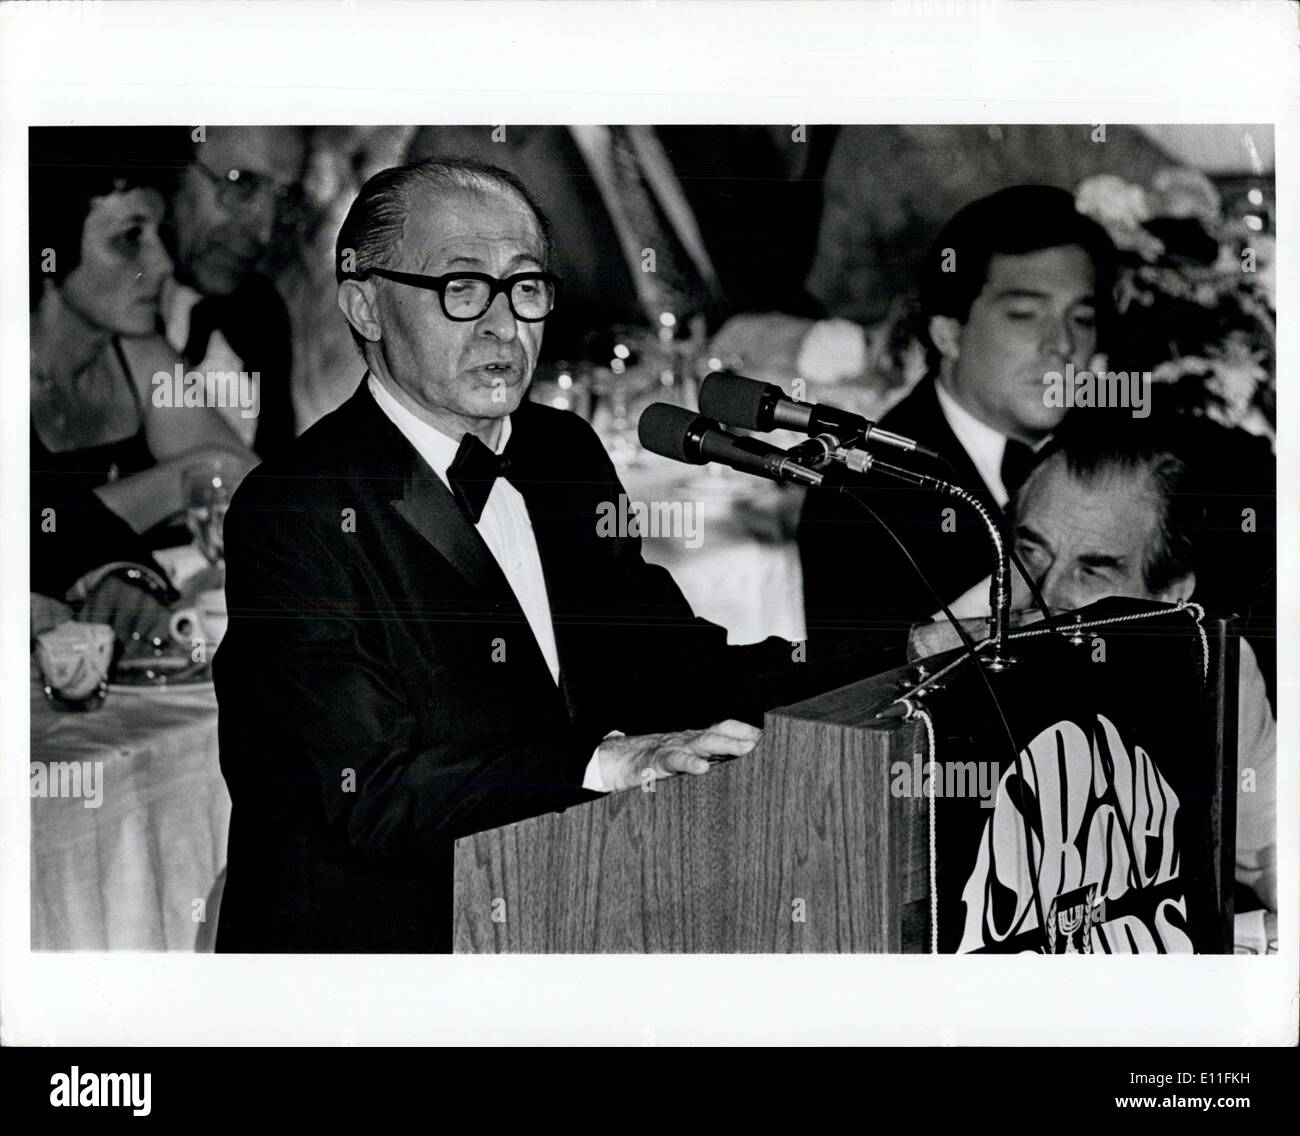 Lug. 21, 1977 - Premier israeliano Menahem Begin parla nello Stato di Israele vincoli nazionali di cena di benvenuto Waldorf Astoria. Foto Stock